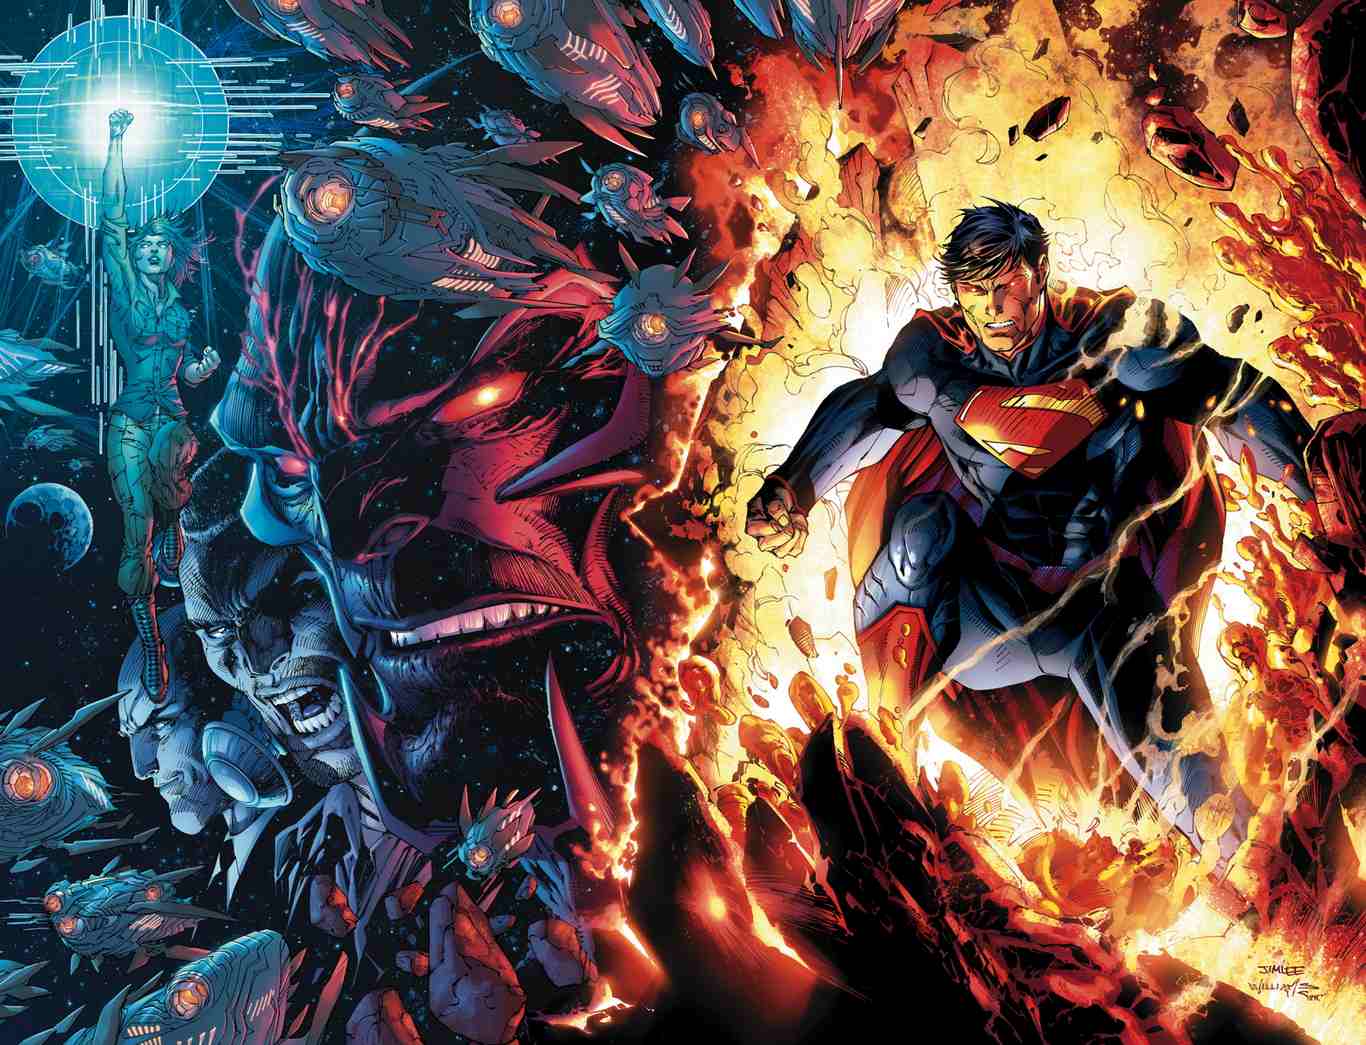 Hình nền Superman trong Liên Quân Mobile sẽ là điều tuyệt vời cho những fan hâm mộ của siêu anh hùng này. Với những hình ảnh cao cấp và đầy màu sắc, bạn có thể tải xuống và đặt làm nền cho điện thoại của mình. Giờ đây, bạn có thể cùng Superman chinh phục mọi thử thách và trở thành người anh hùng trong trò chơi yêu thích của riêng bạn!